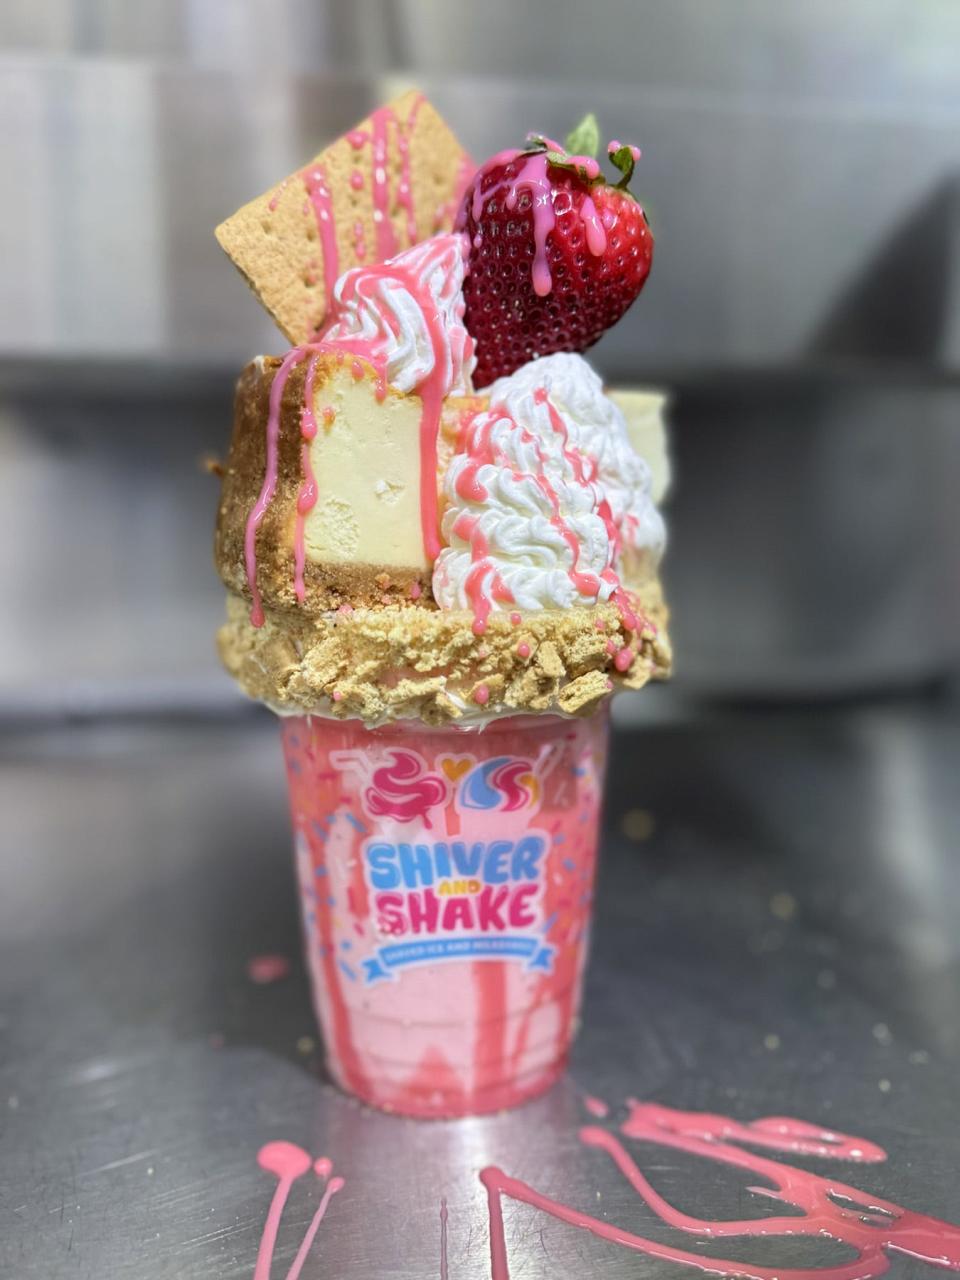 The strawberry cheesecake shake has a slice of cheesecake and a fresh strawberry topping the strawberry ice cream shake.